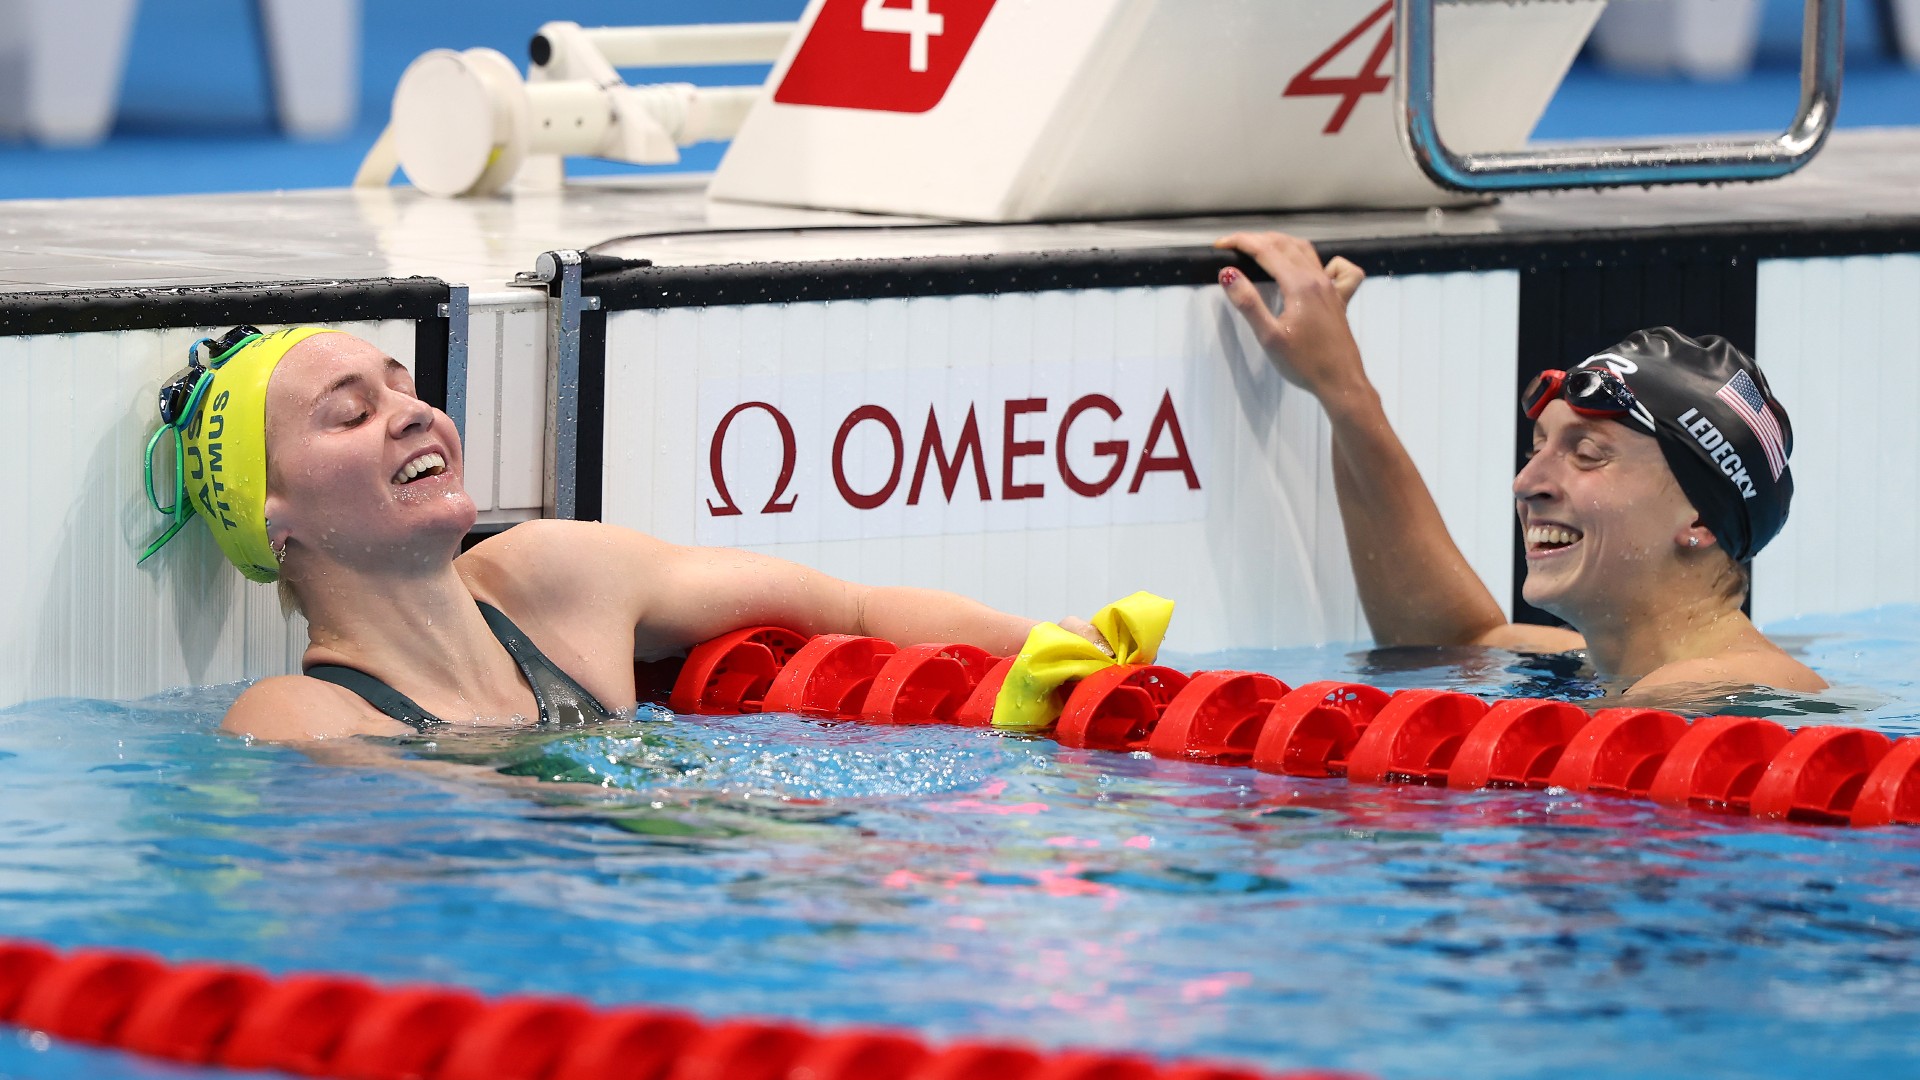 Résultats olympiques de natation: Ariarn Titmus bat Katie Ledecky, les hommes américains remportent l’or au relais